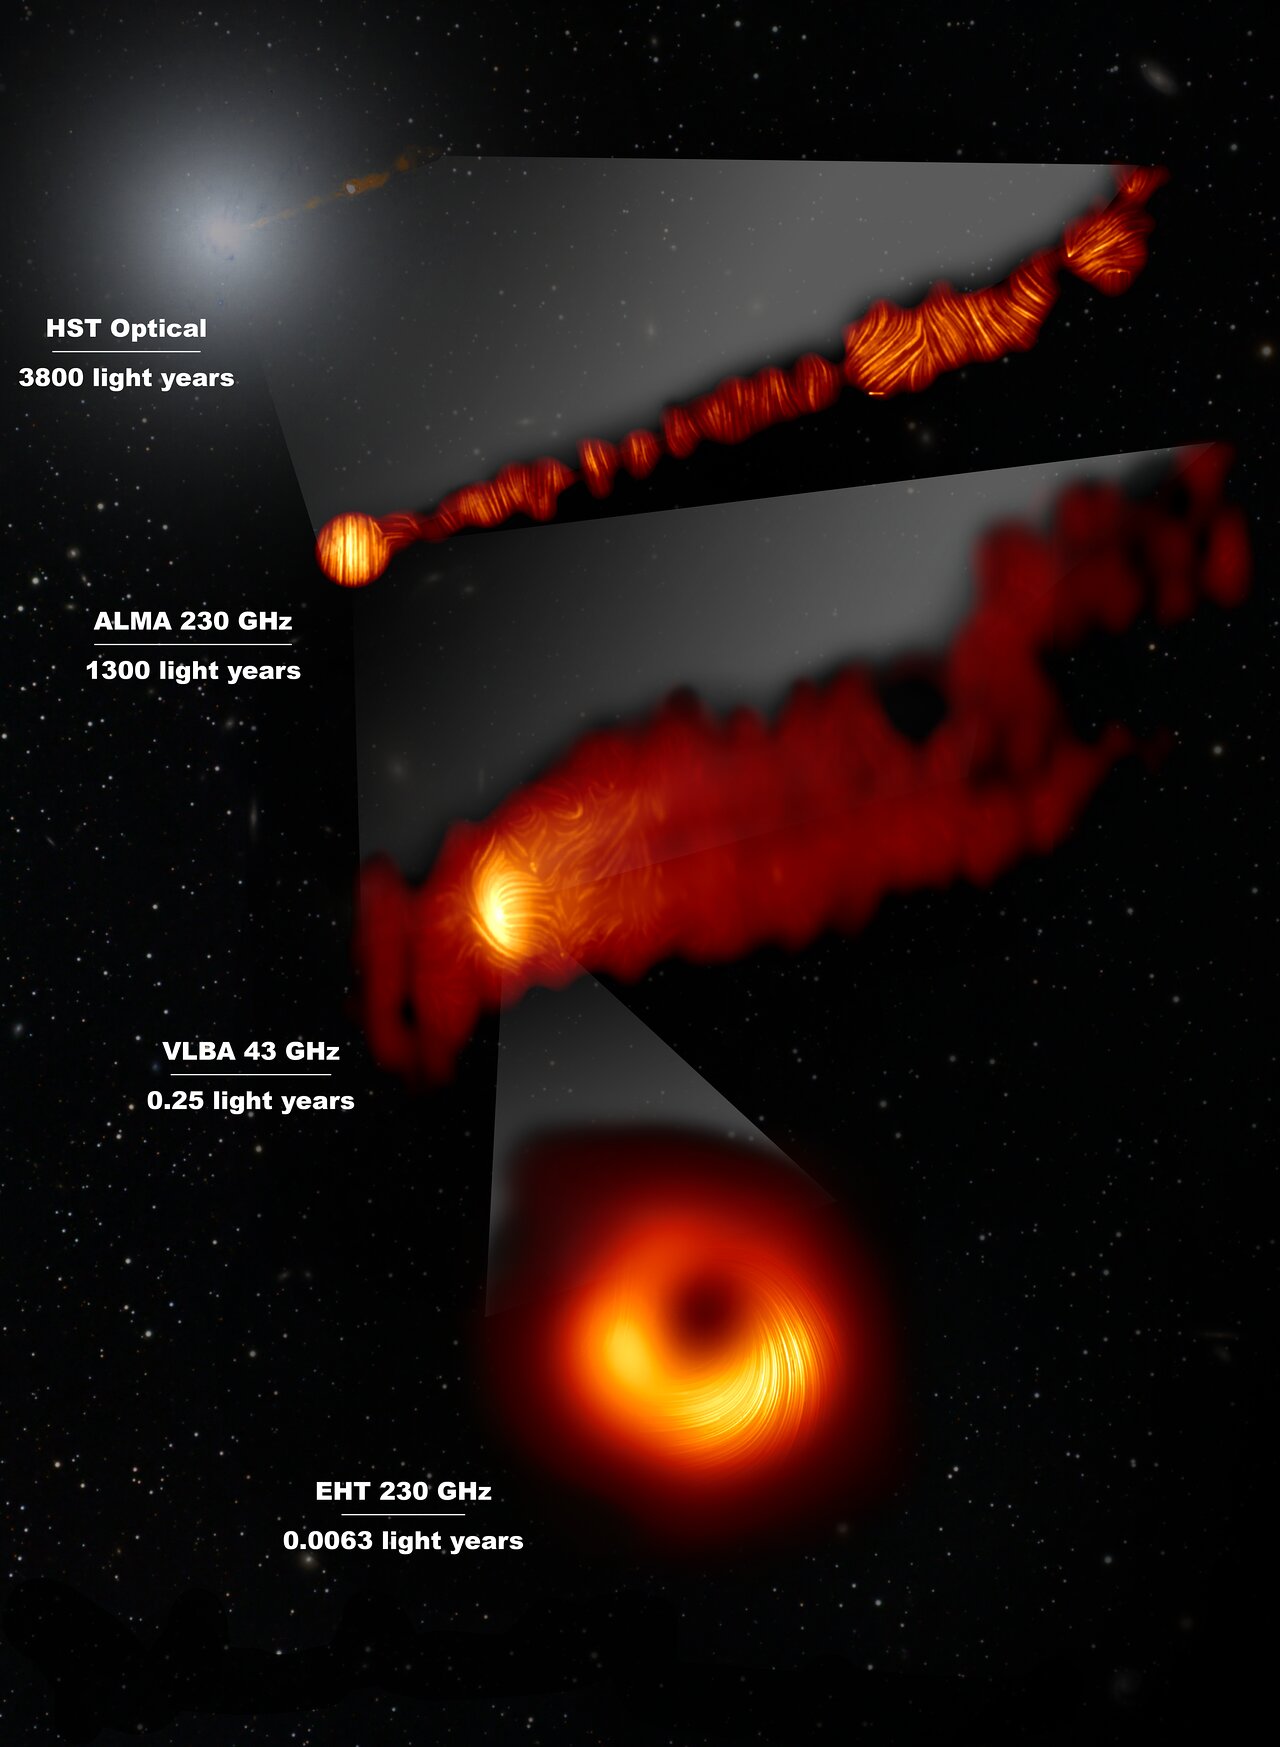 Snímky srdce galaxie M87 v polarizovaném světle, z různých teleskopů. Kredit: EHT Collaboration; ALMA (ESO/NAOJ/NRAO), Goddi et al.; NASA, ESA and the Hubble Heritage Team (STScI/AURA); VLBA (NRAO), Kravchenko et al.; J. C. Algaba, I. Martí-Vidal